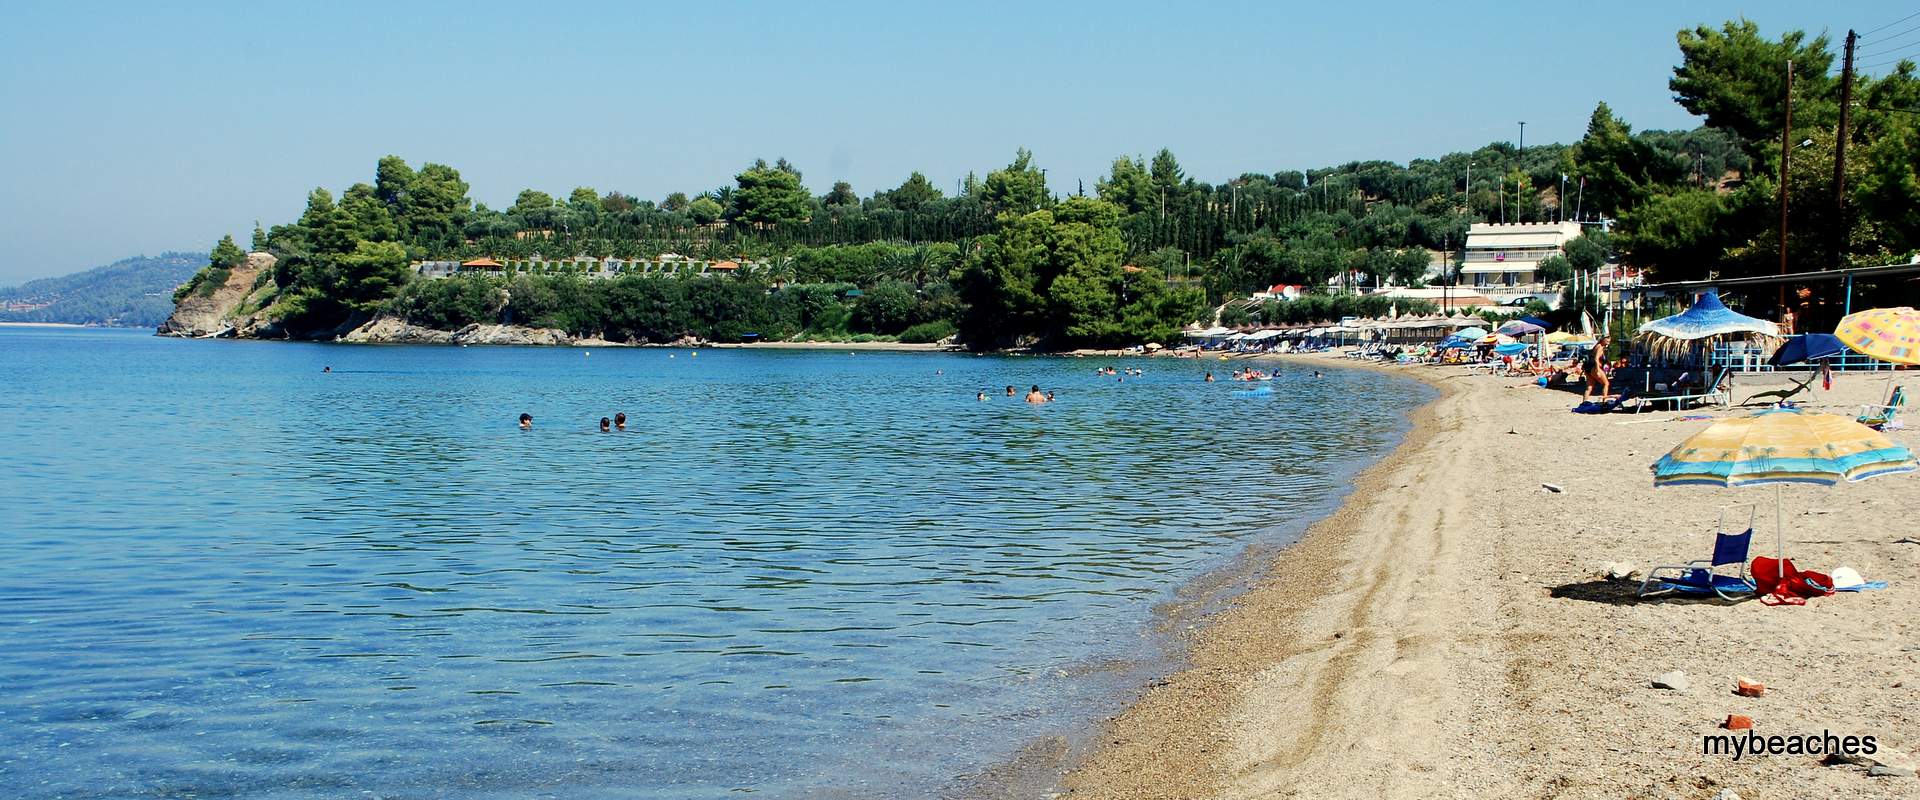 Paradisos beach, Sithonia, Halkidiki, Greece